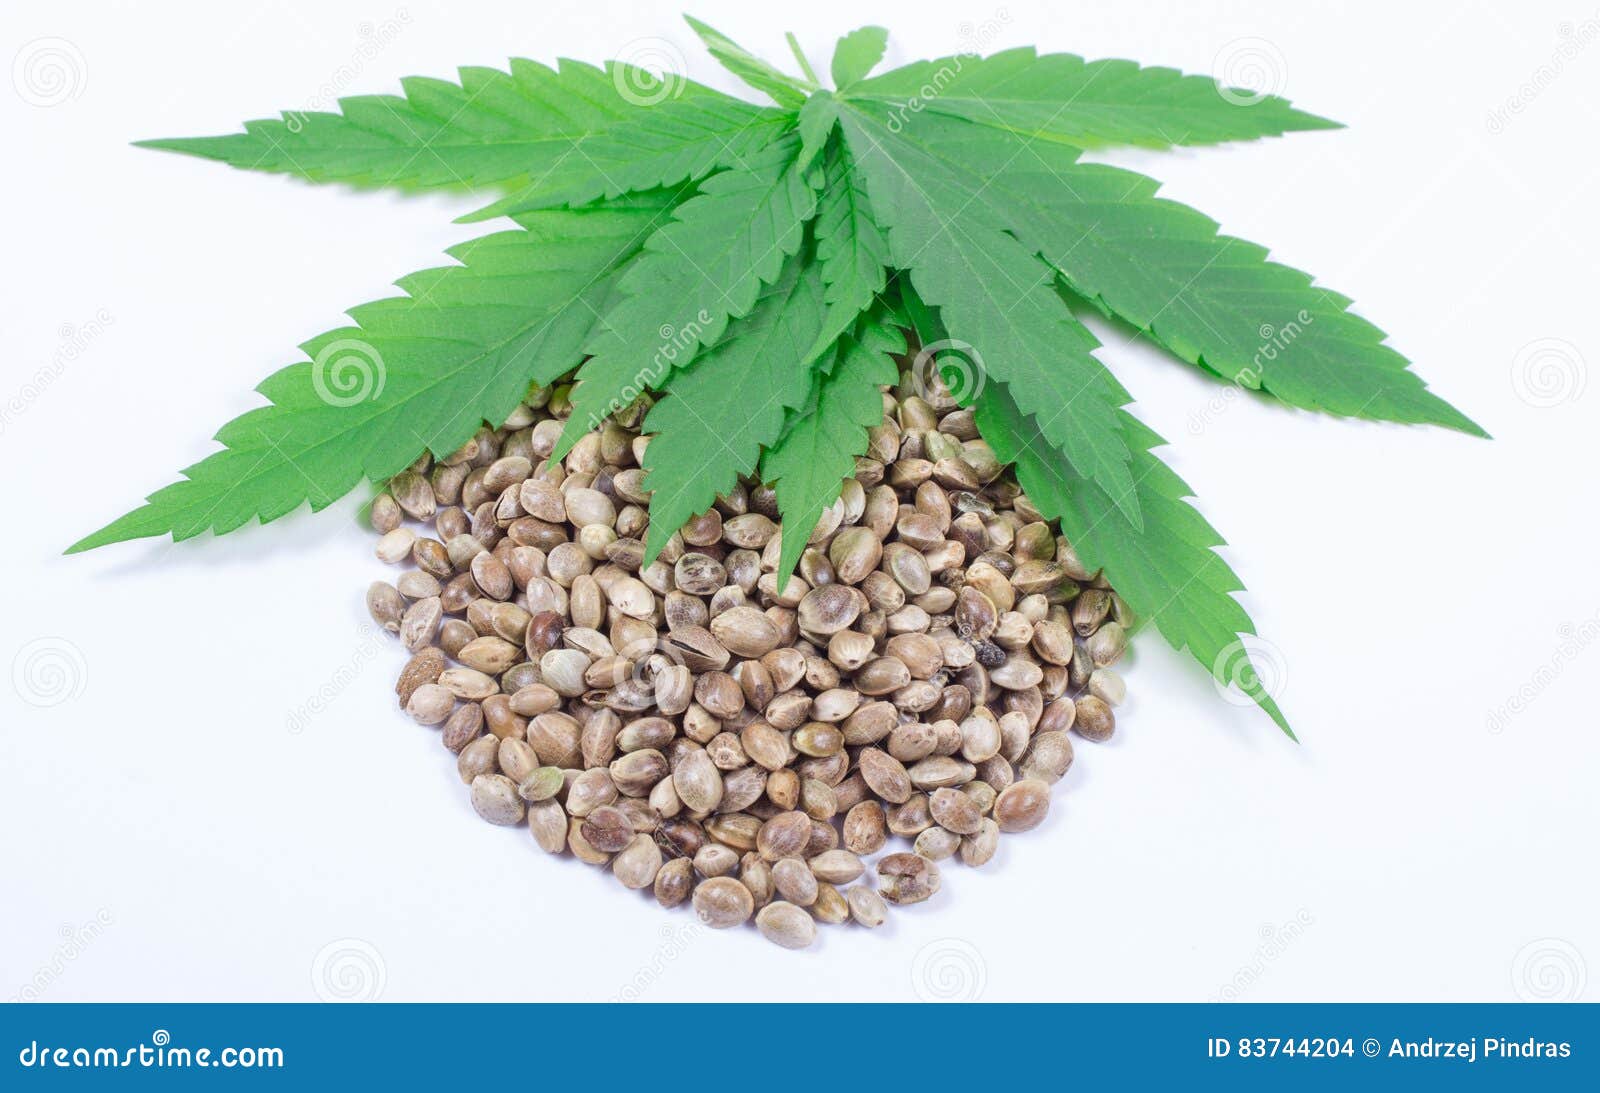 Конопля семя лист марихуана пол различие